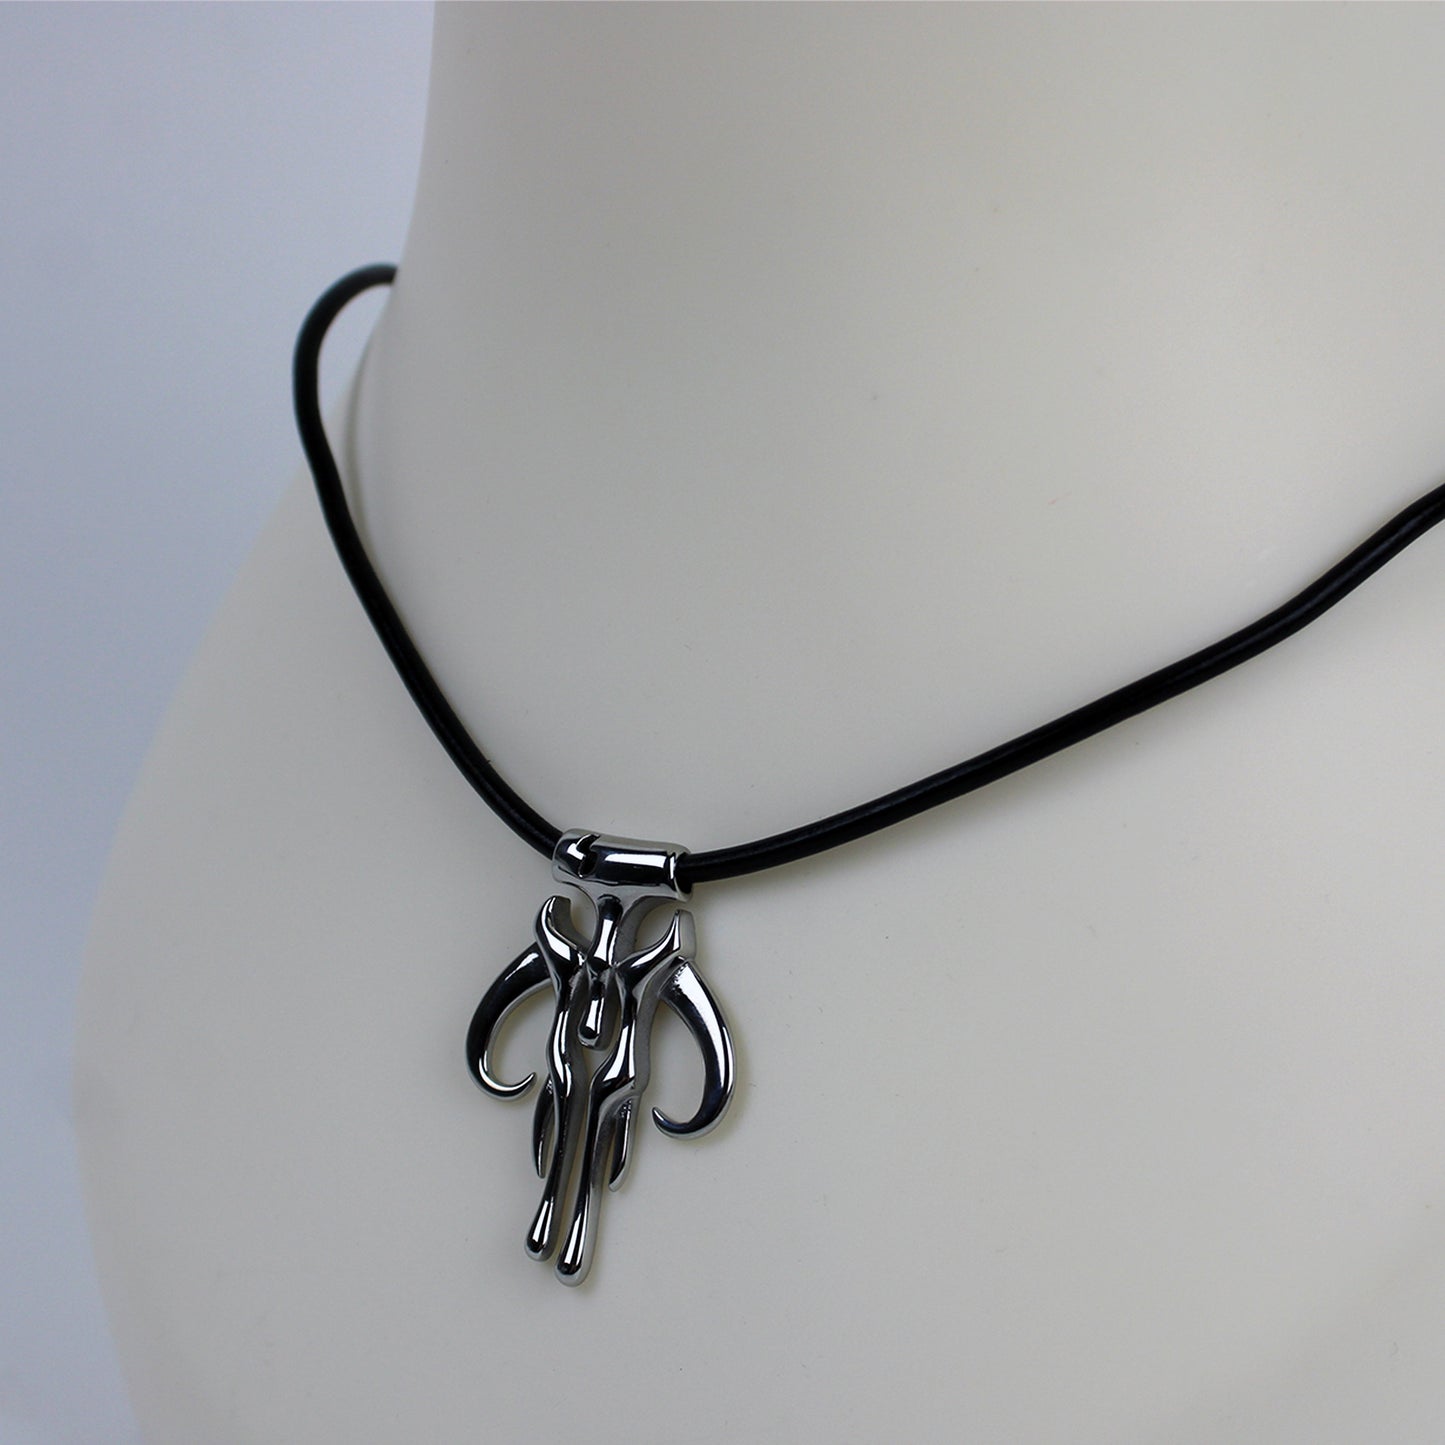 Mandalorian Mythosaur Leather Cord Necklace